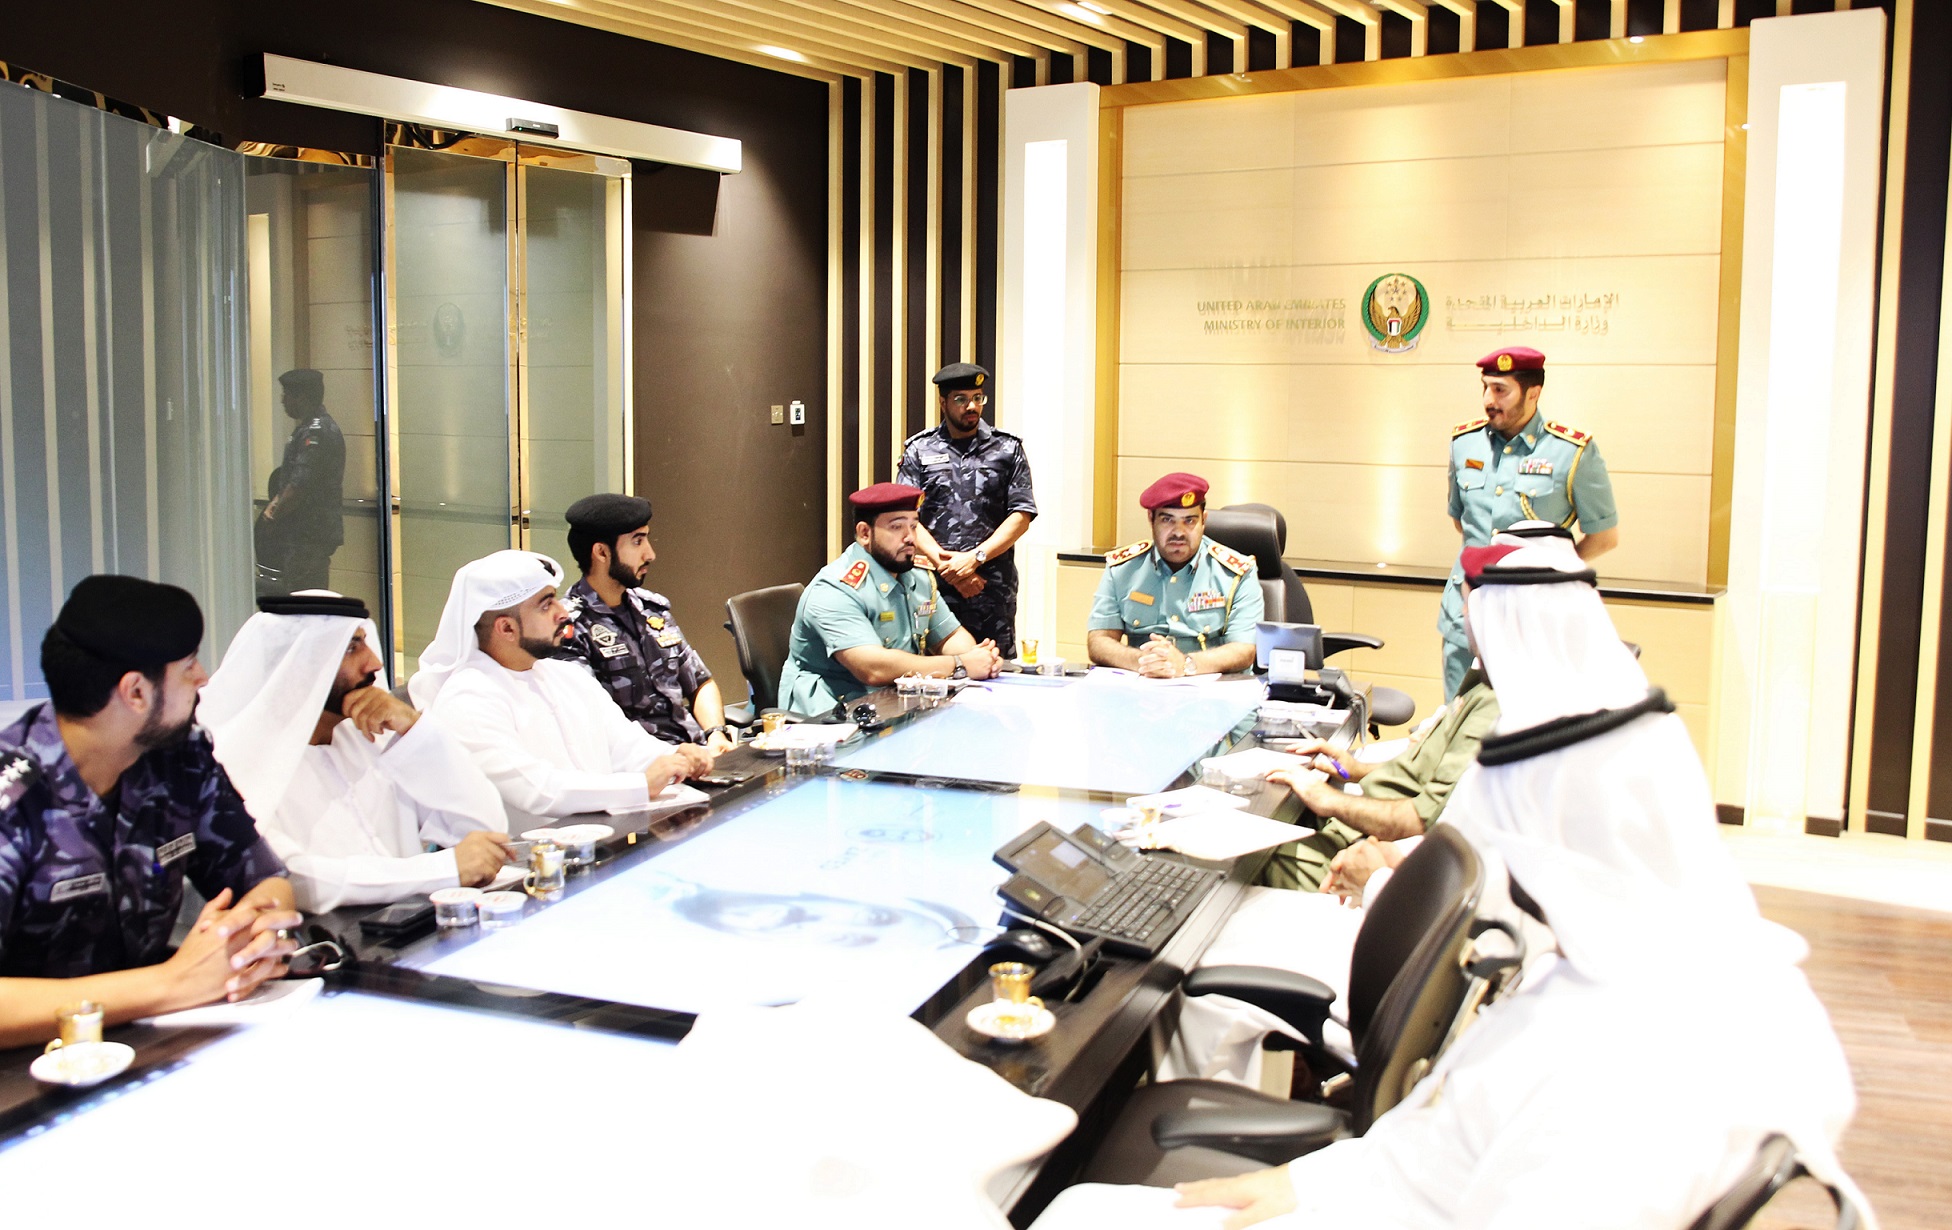 ‫شرطة عجمان تضع خطة أمنية شاملة لتنظيم انتخابات المجلس الوطني لعام 2019‬